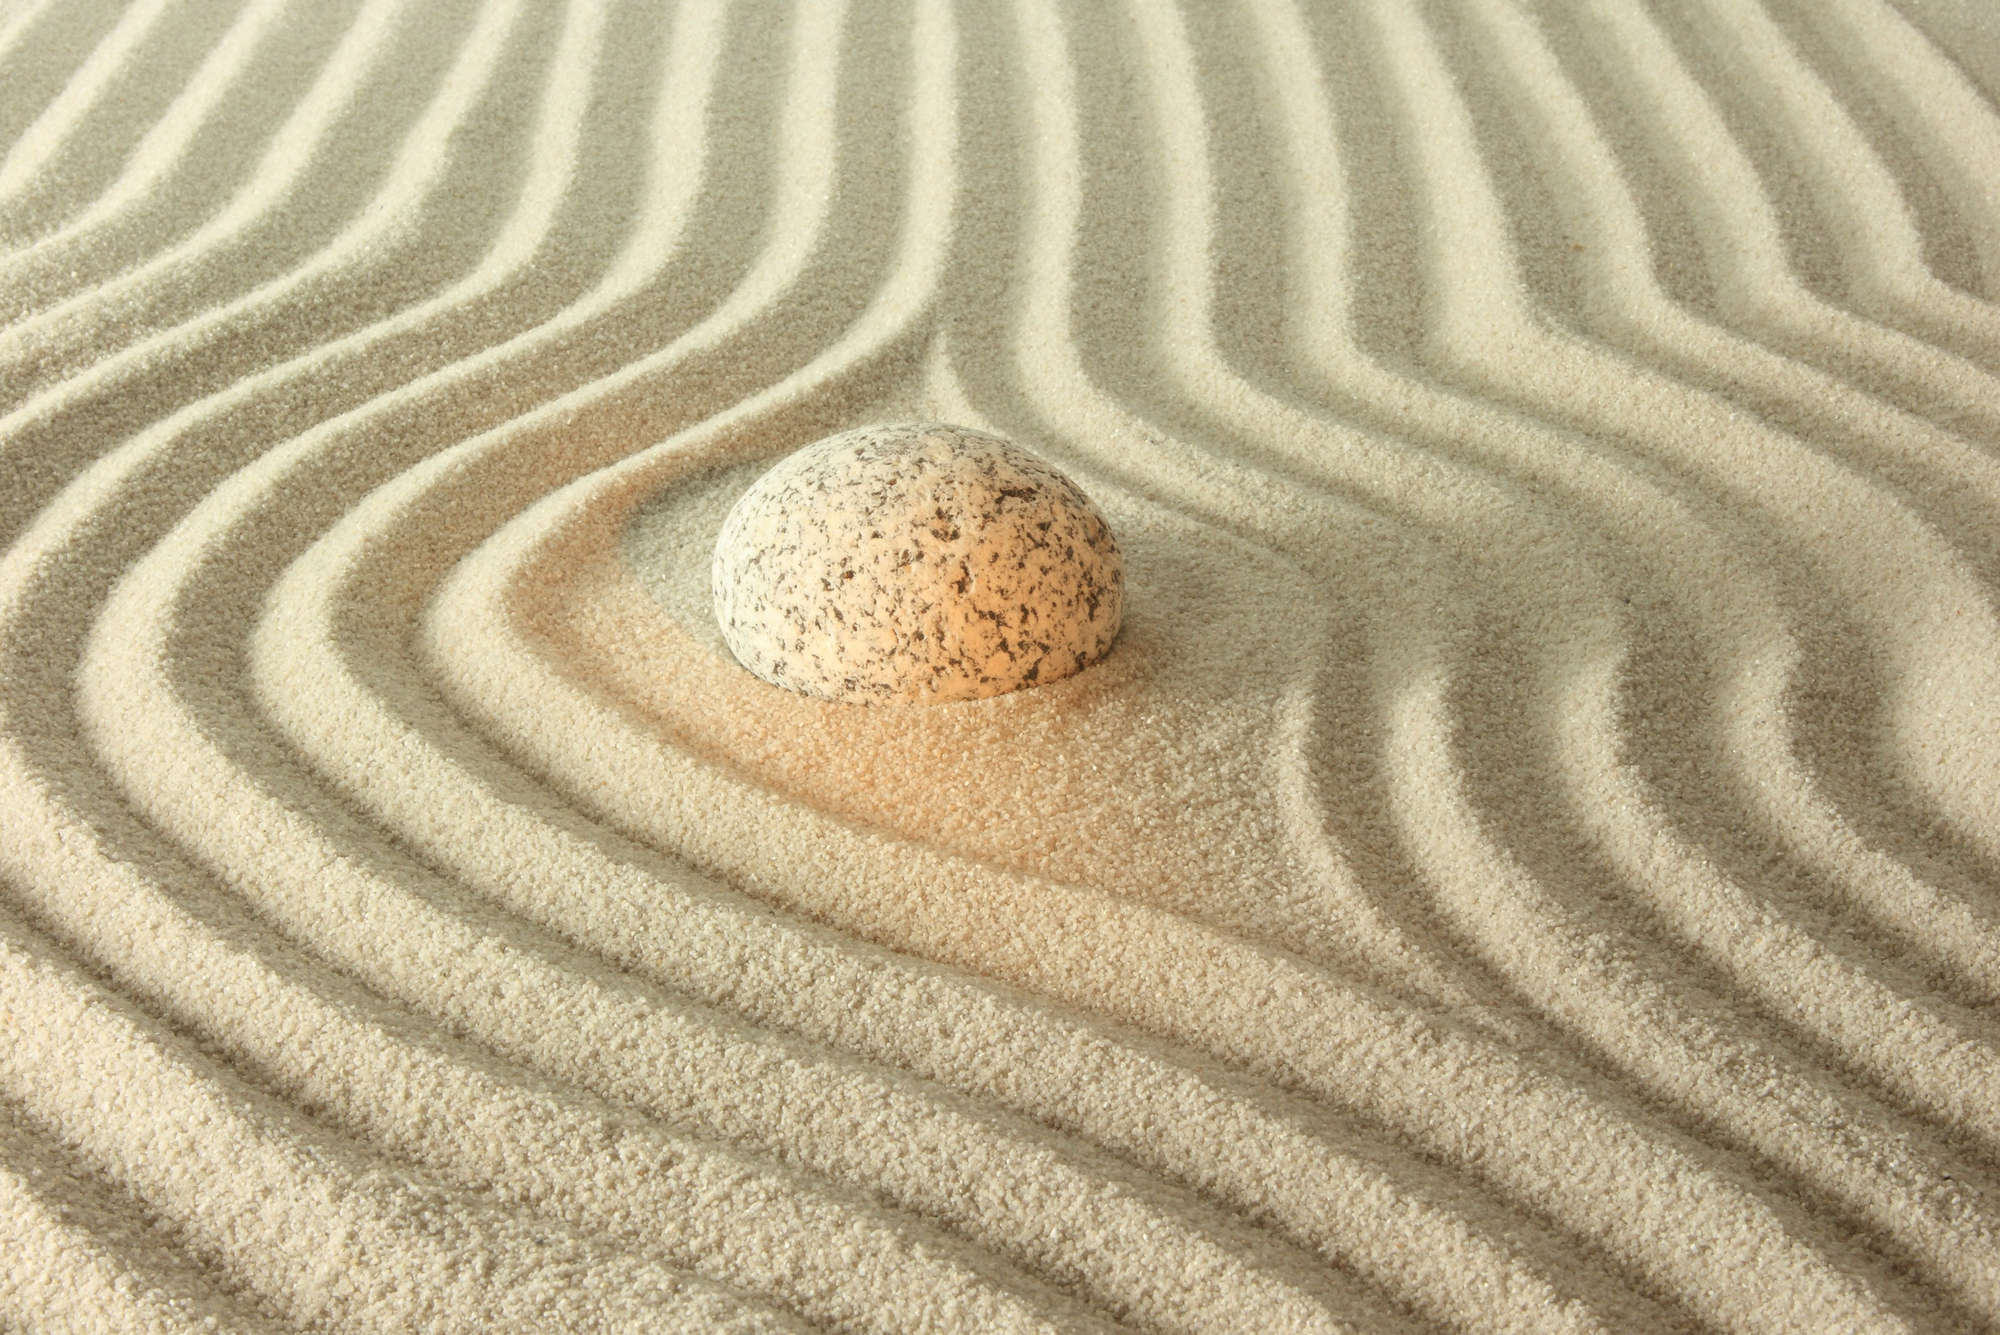             Fototapete leuchtender Stein im Sand – Strukturiertes Vlies
        